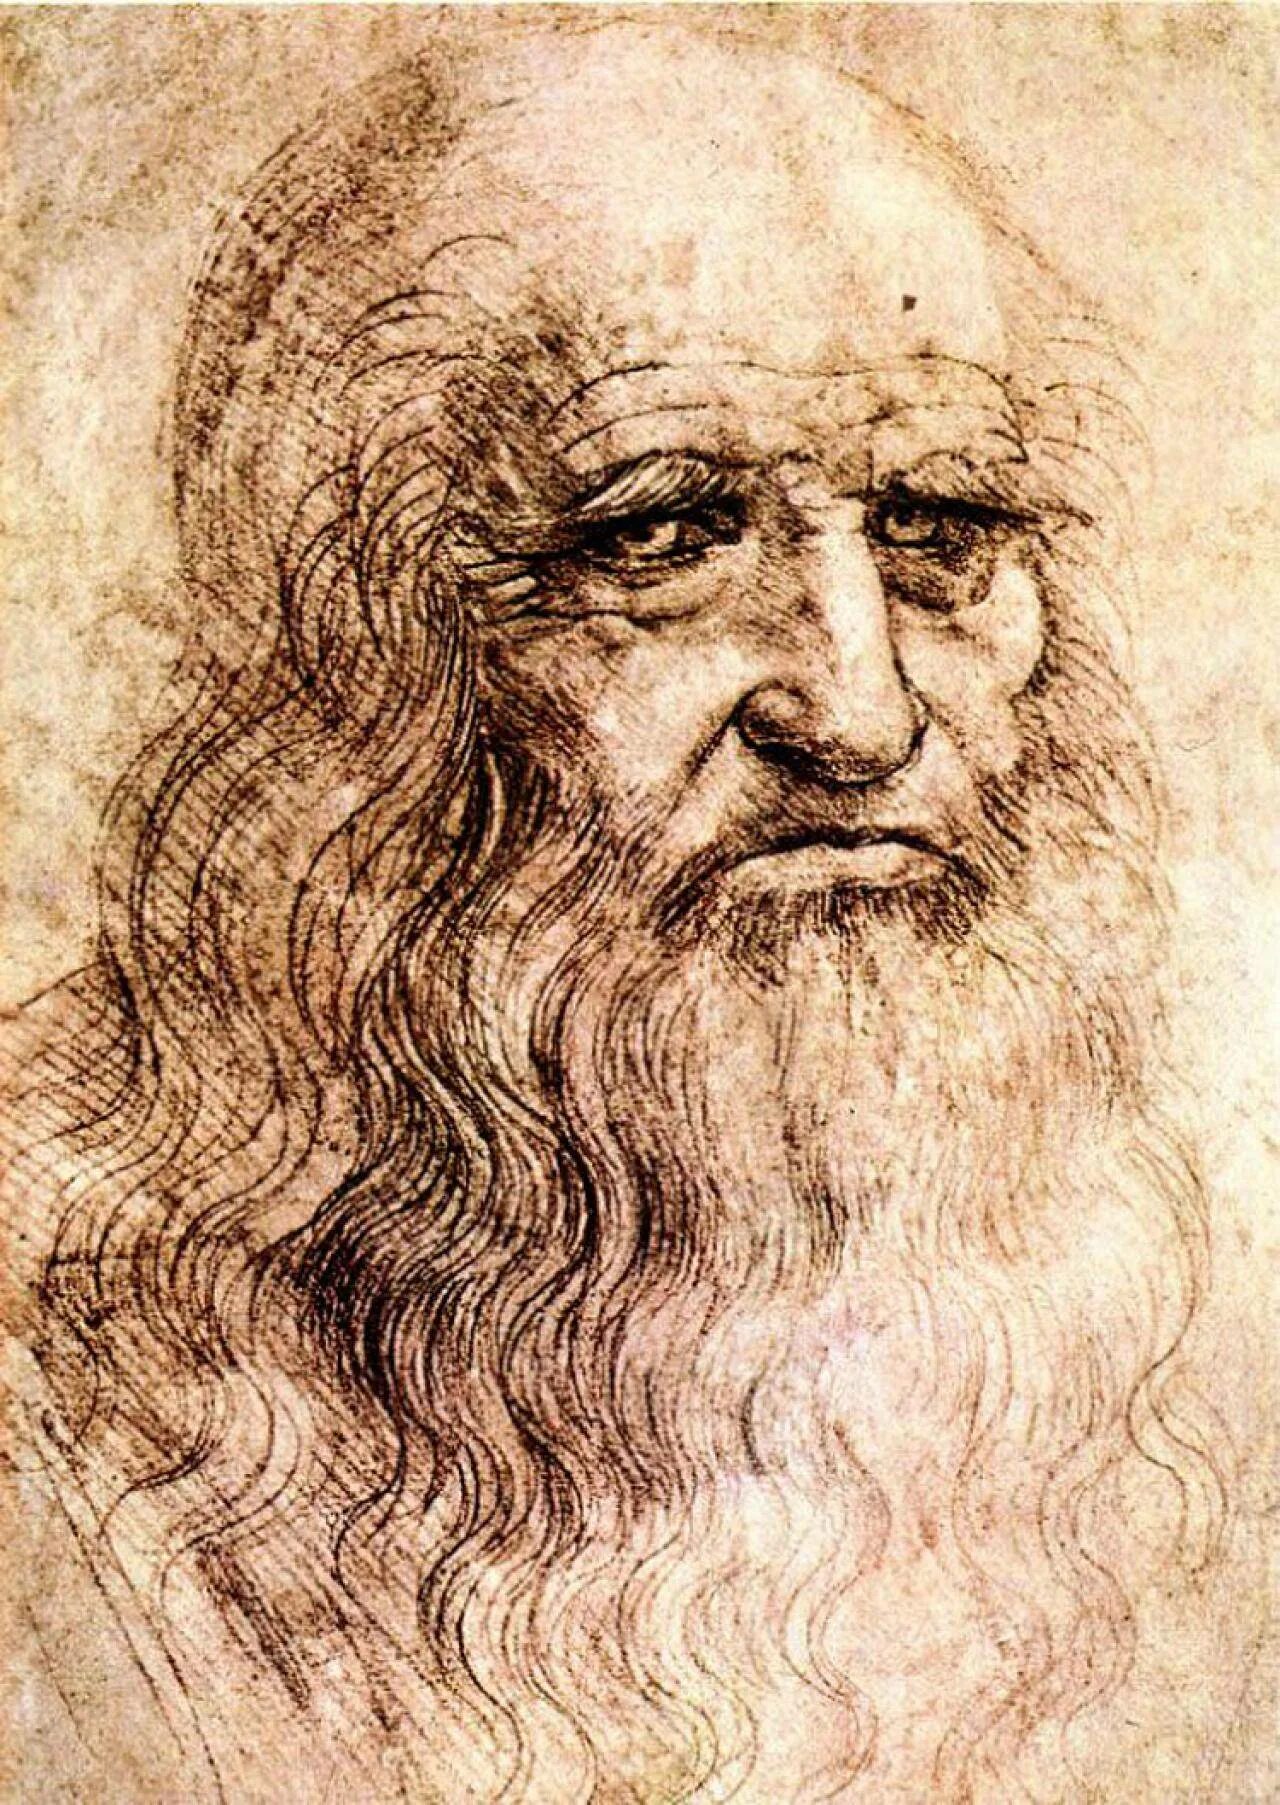 Гении возрождения. Леонардо да Винчи автопортрет 1512. Леонардоида Винчи автопортрет. Леонардо да Винчи портрет. Леонардо да Винчи Автопорт.